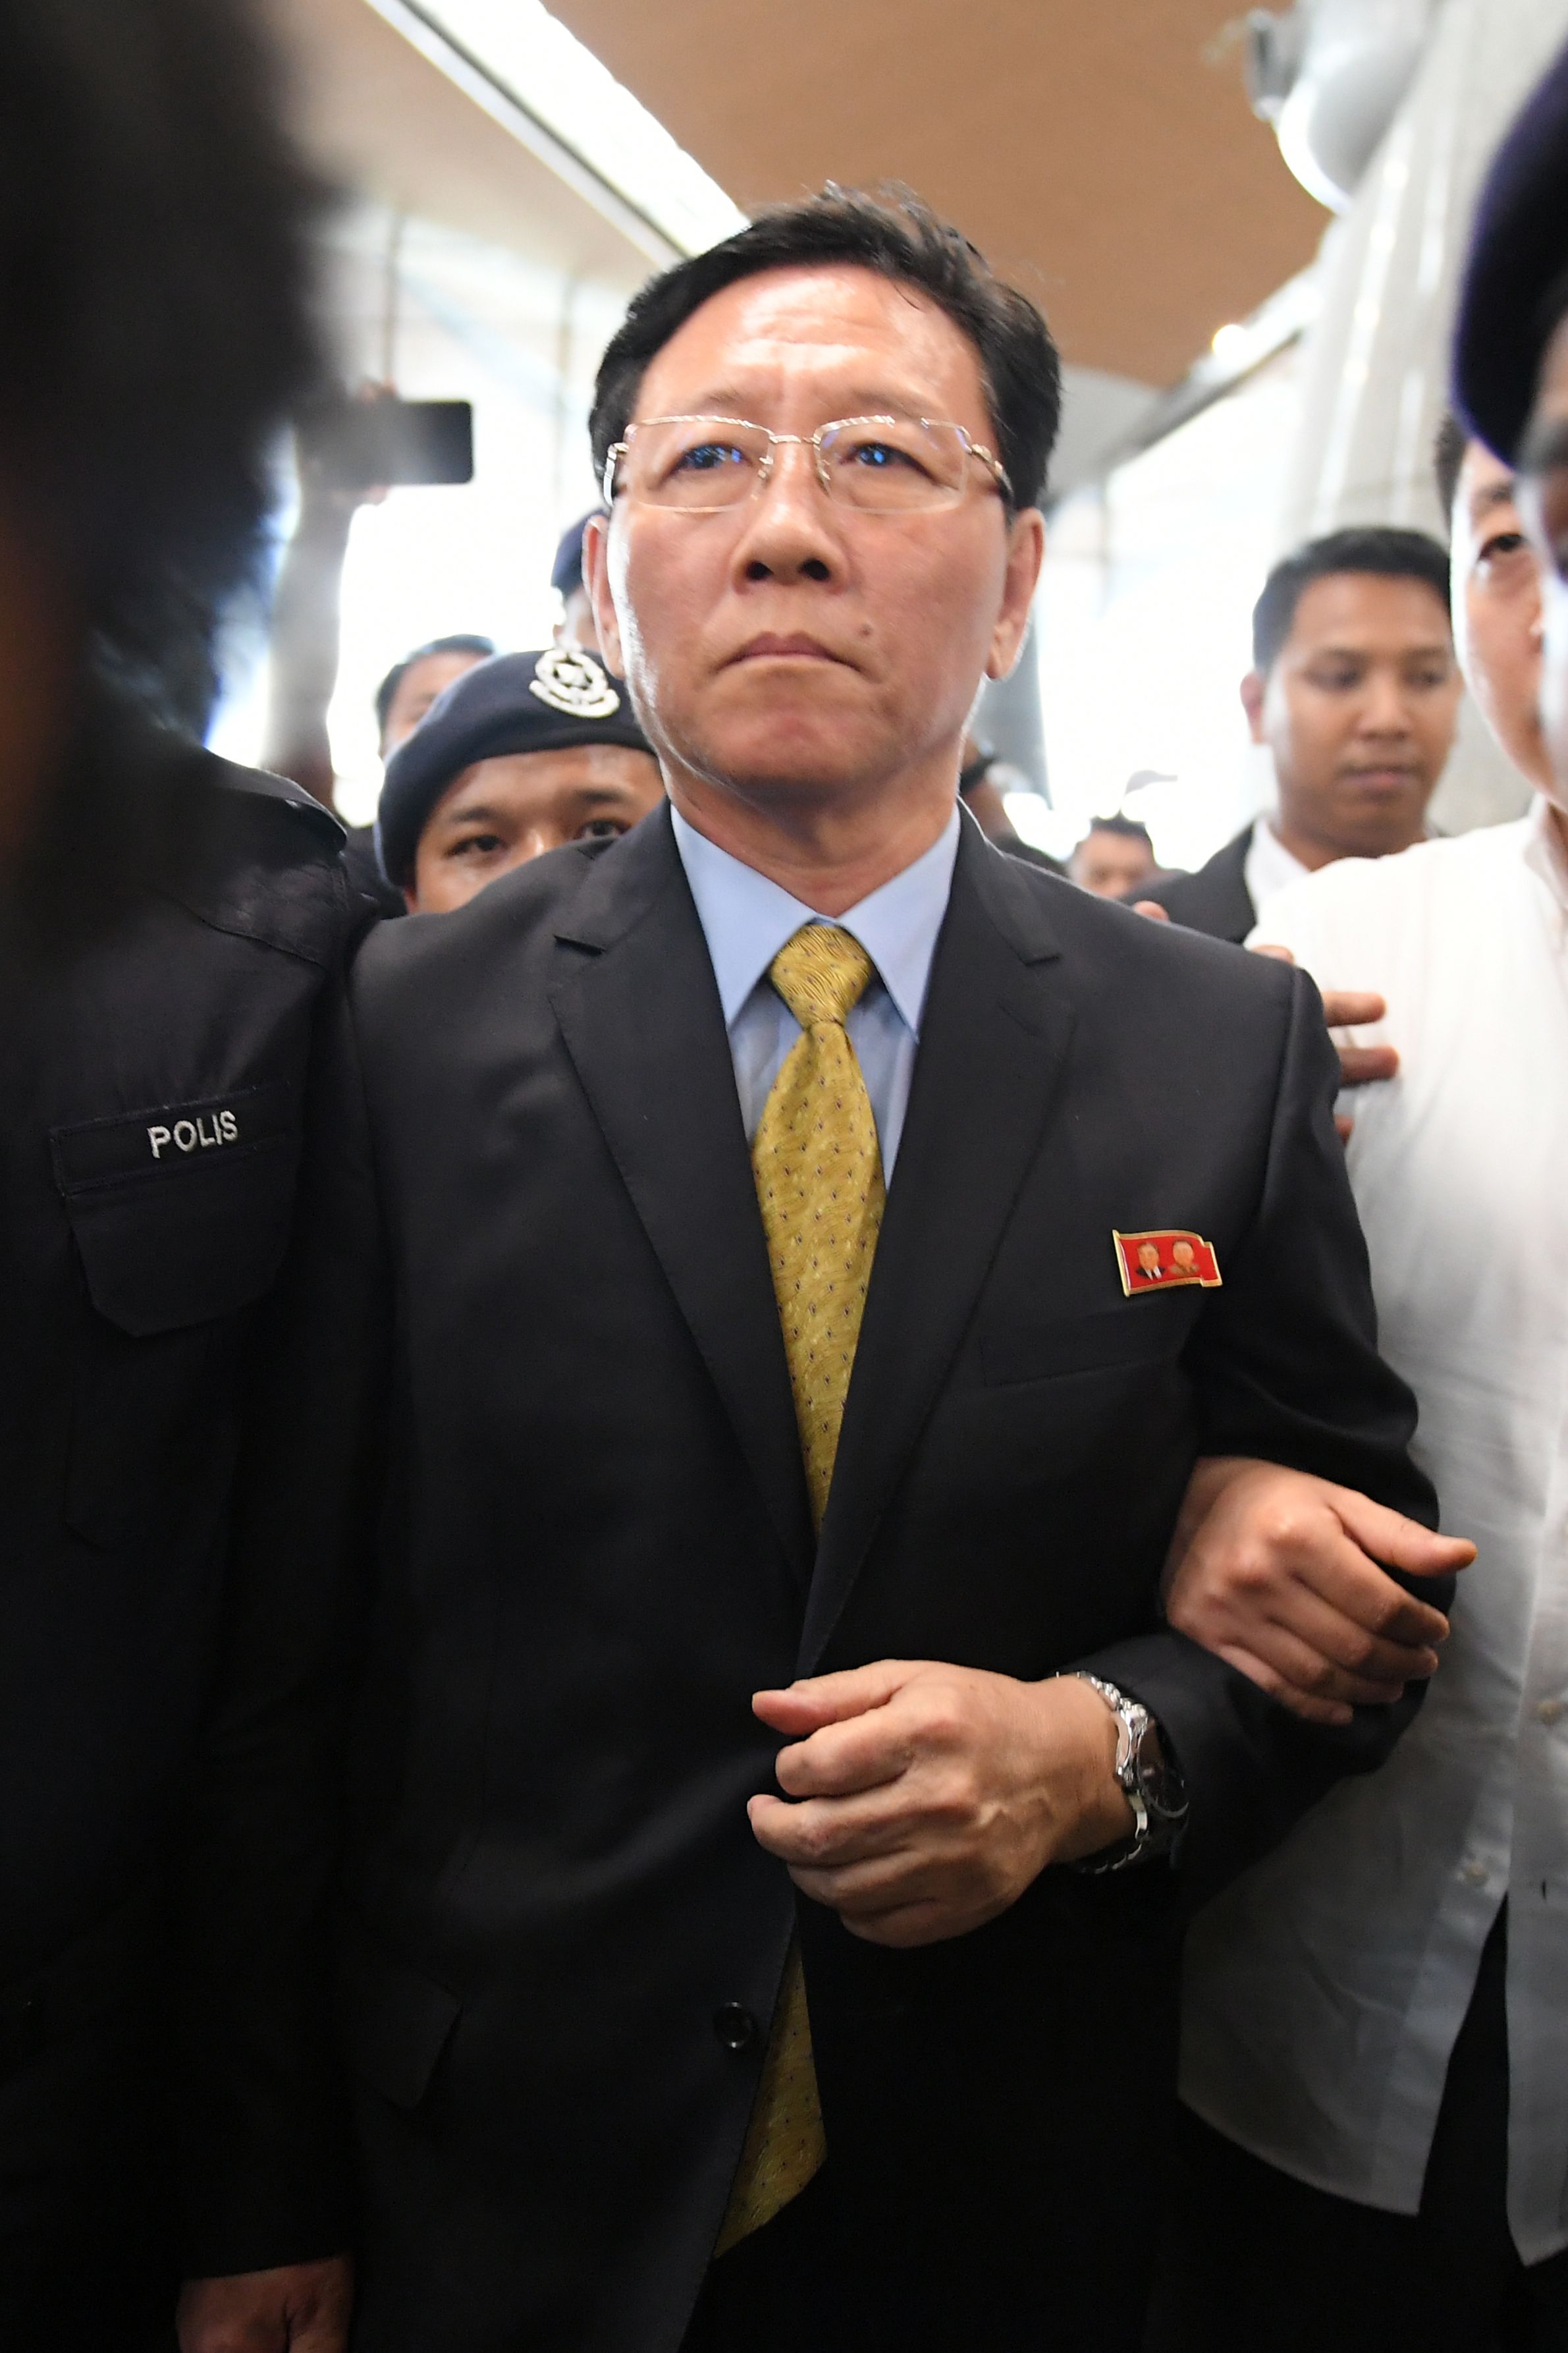 كانج تشول سفير كوريا الشمالية خلال مغادرته ماليزيا